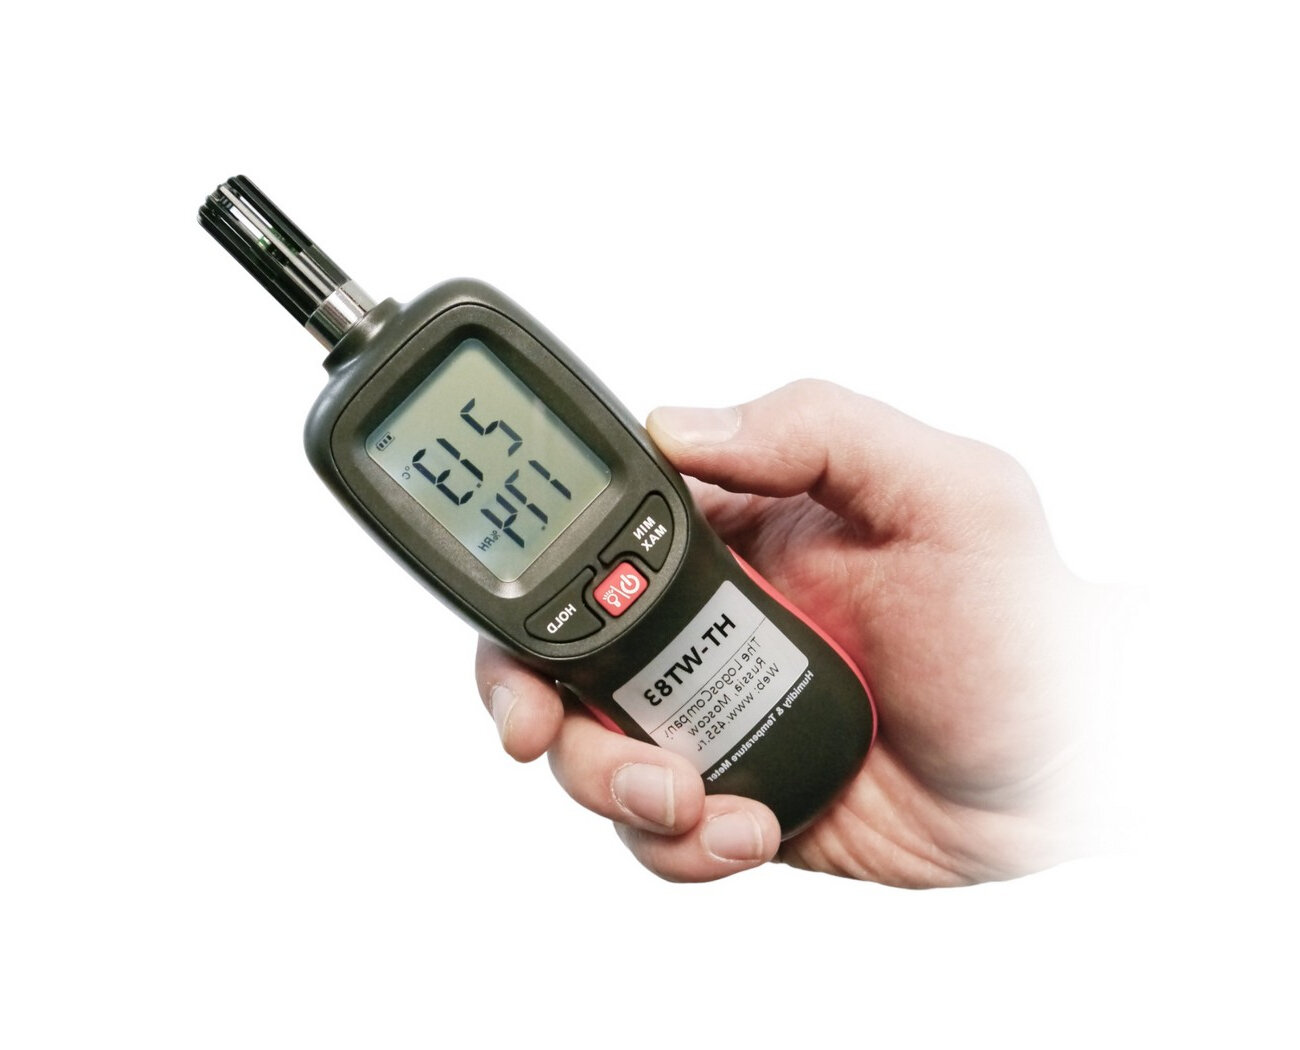 Термогигрометр Hti-WT 83 (черн) (E1826EU) - 4 параметра: температура, влажность, темп. точки росы, температура влажного термометра